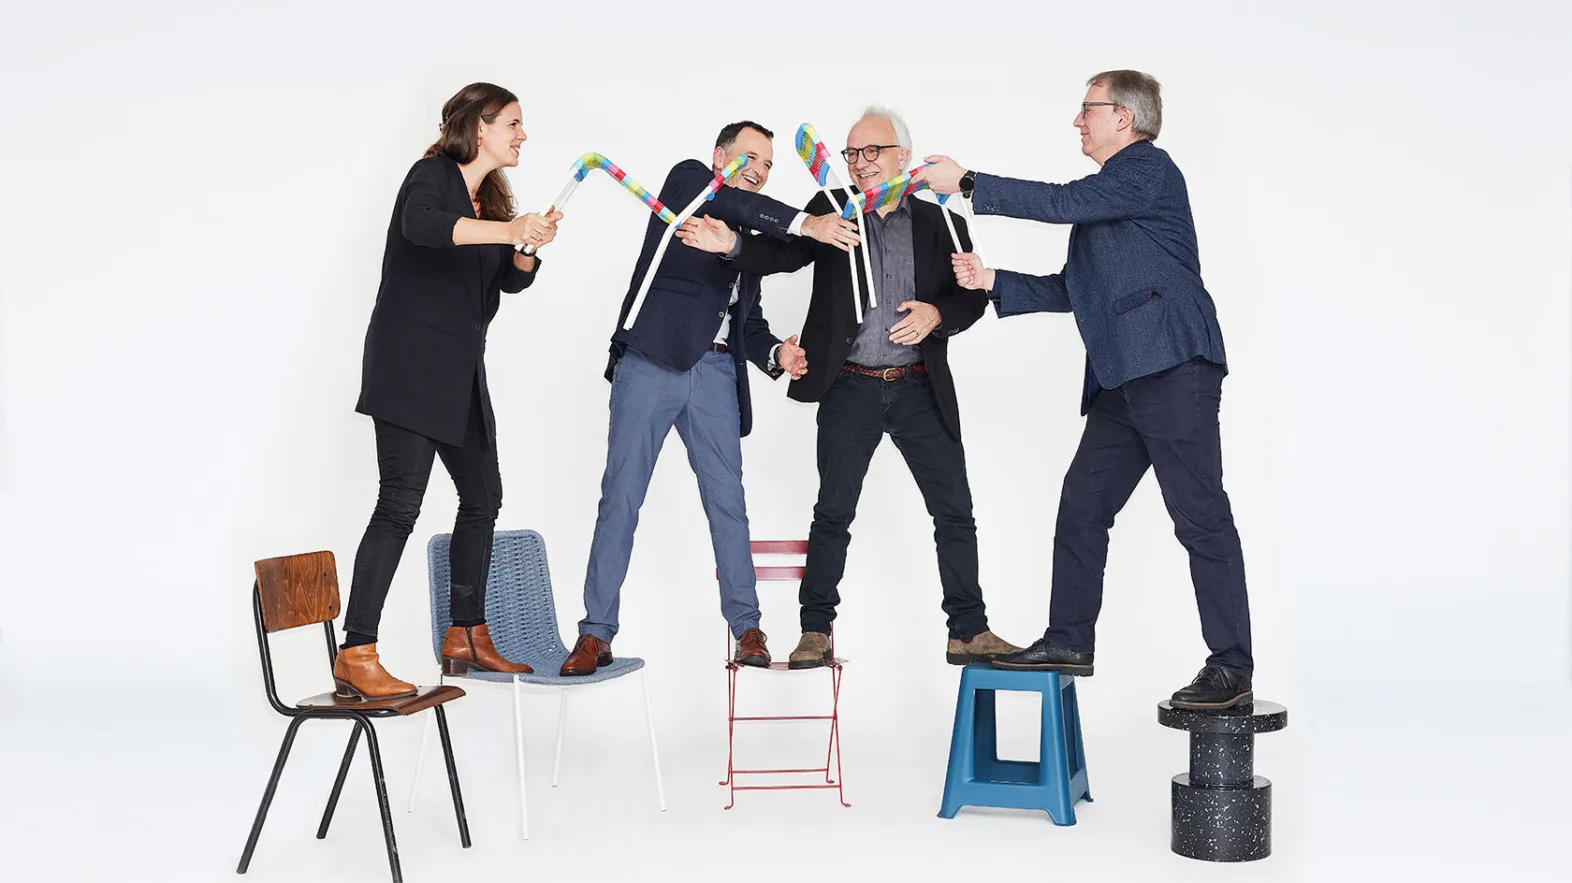 Quatre personnes se tiennent debout, chacune avec une jambe, sur des chaises ou des tabourets disposés en demi-cercle et tiennent ensemble deux petites chaises colorées.